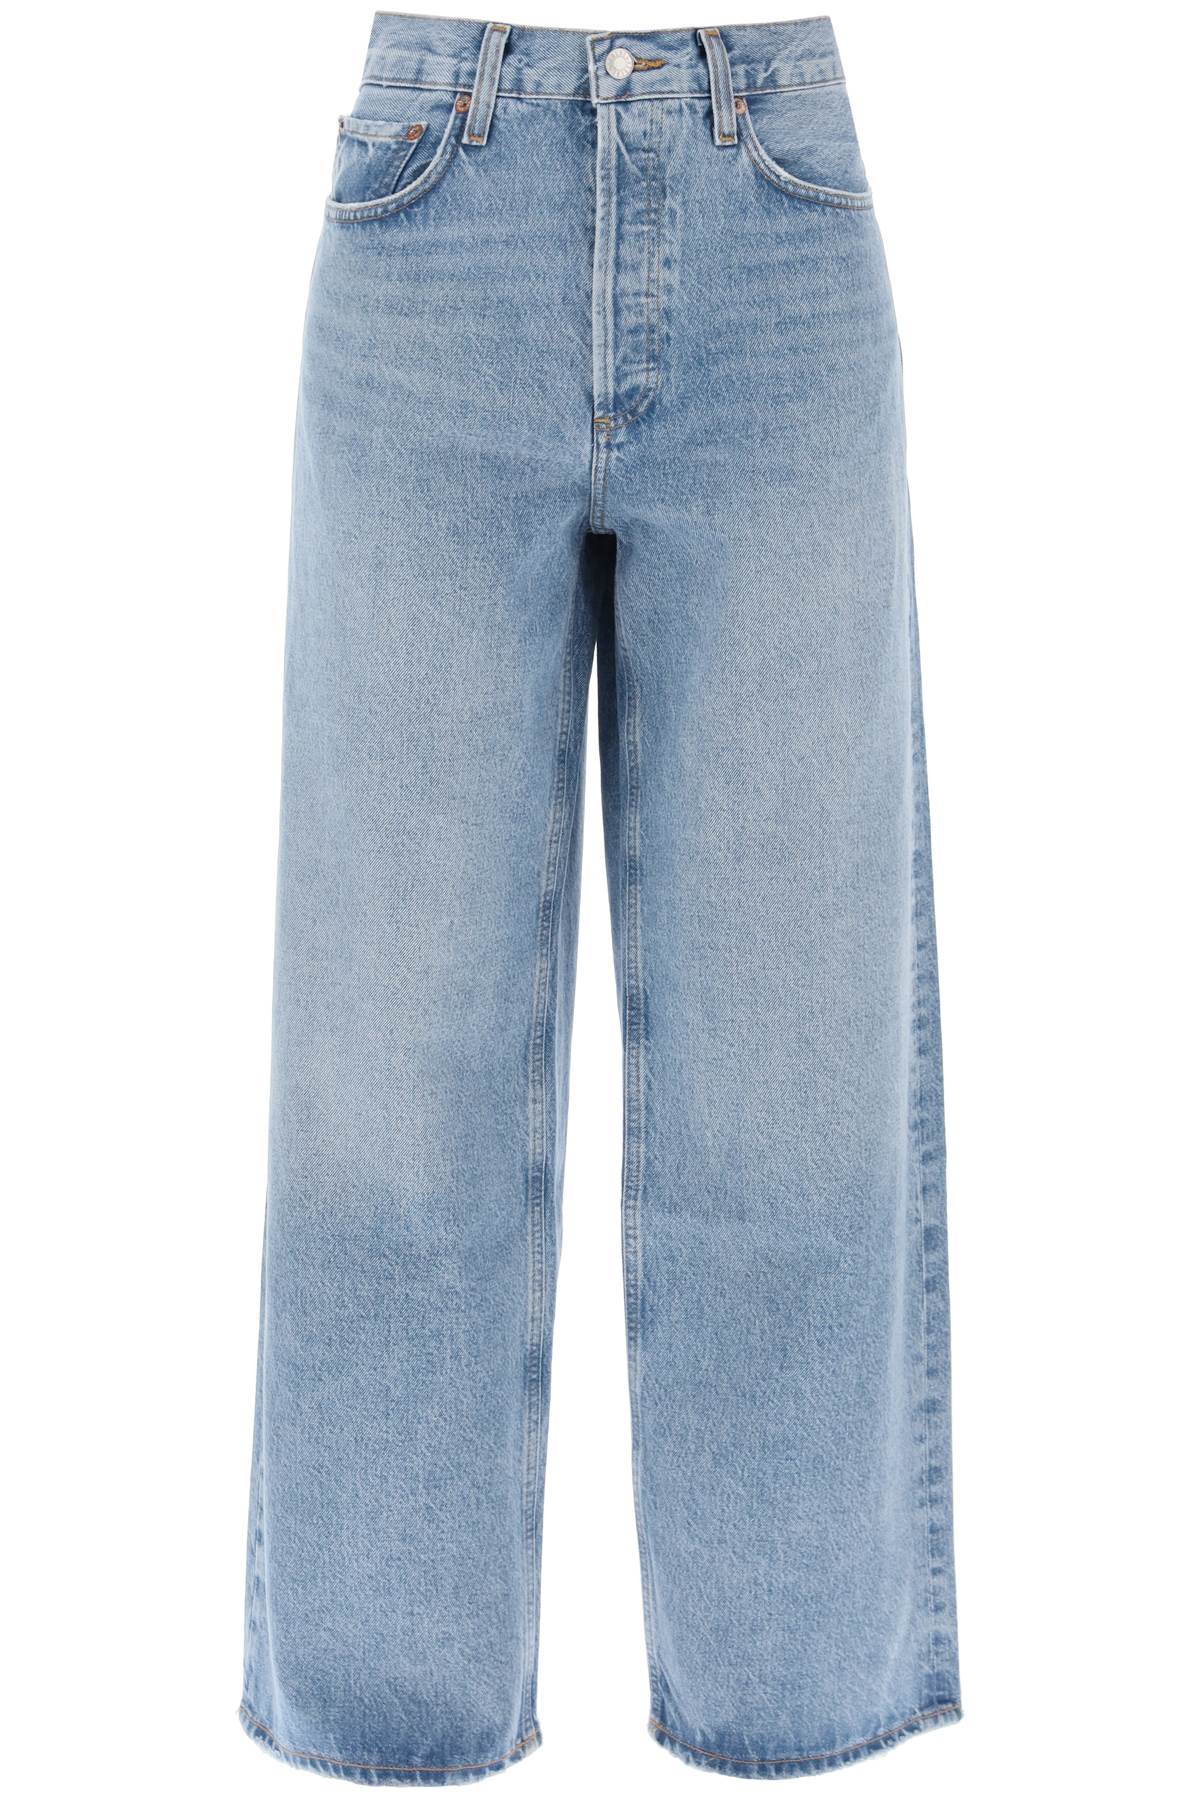 Agolde low slung baggy jeans-0